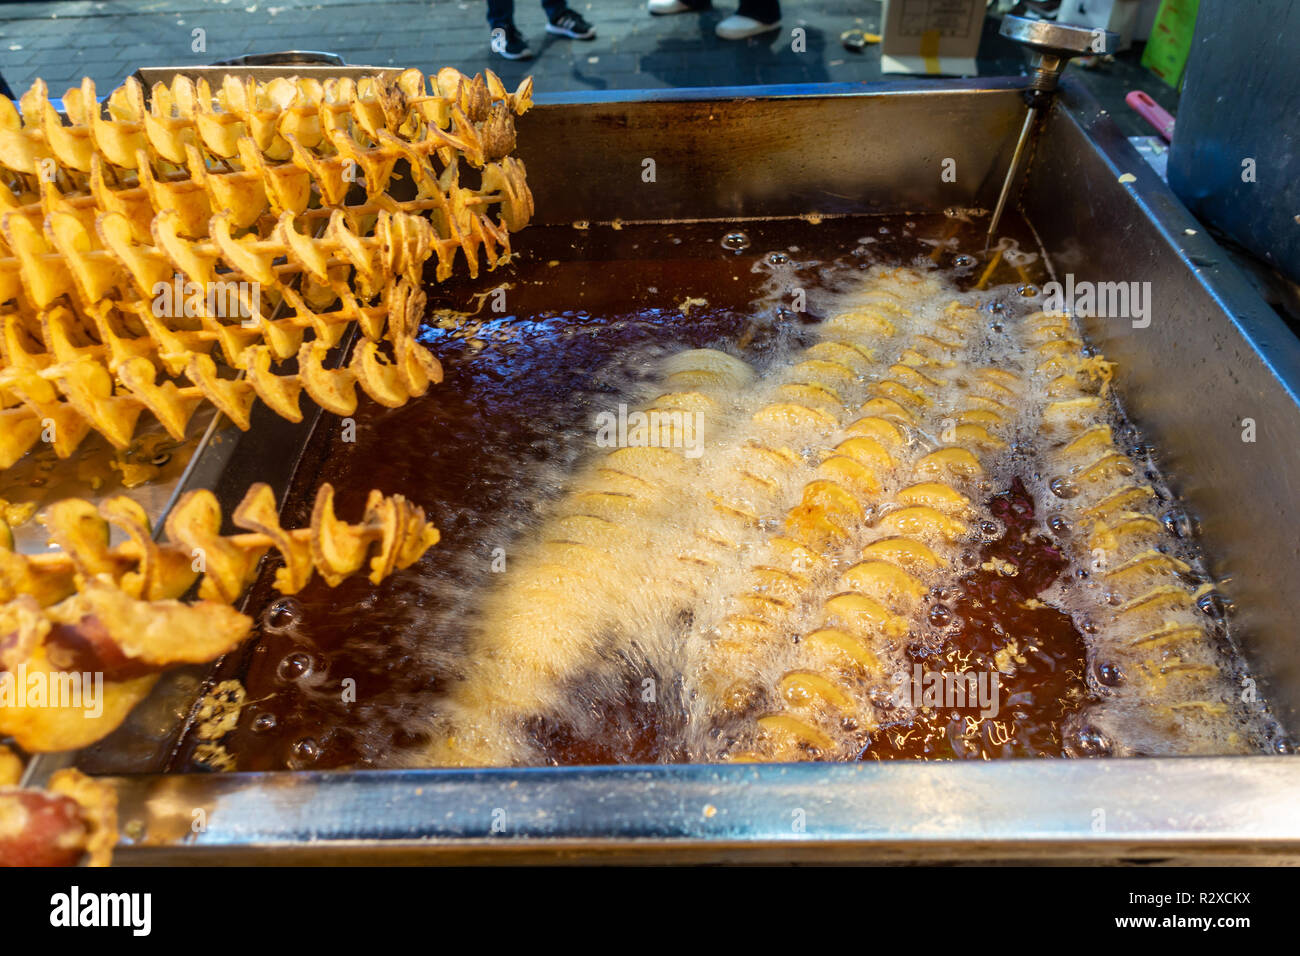 Spirali di patate su spiedini di legno friggere in olio ben caldo su un cibo di strada in stallo a Myeongdong a Seul, in Corea del Sud. Foto Stock